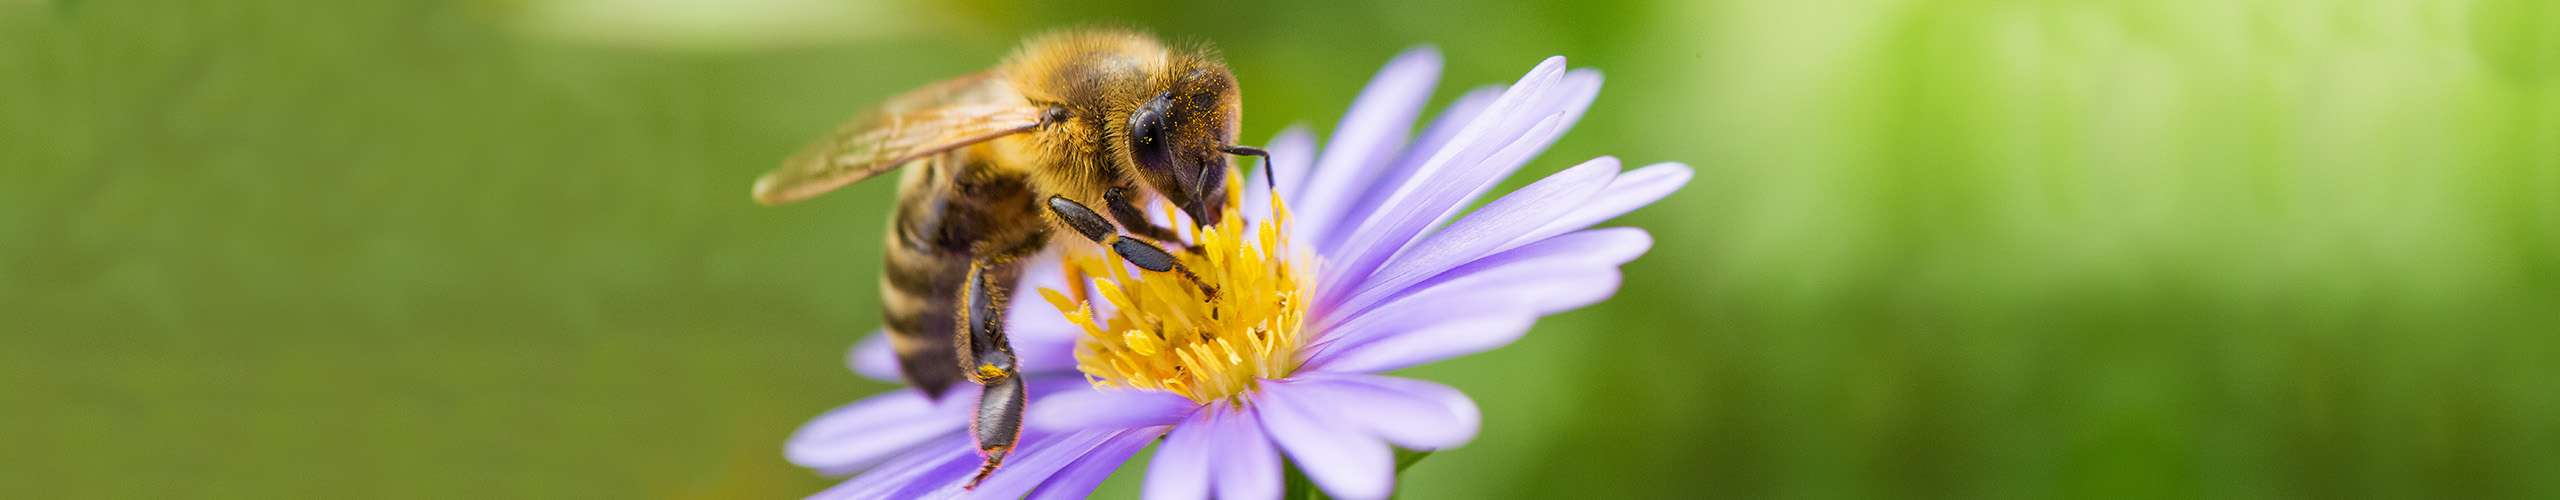 Warum Bienen so wichtig für uns sind – und wie wir ihnen helfen können